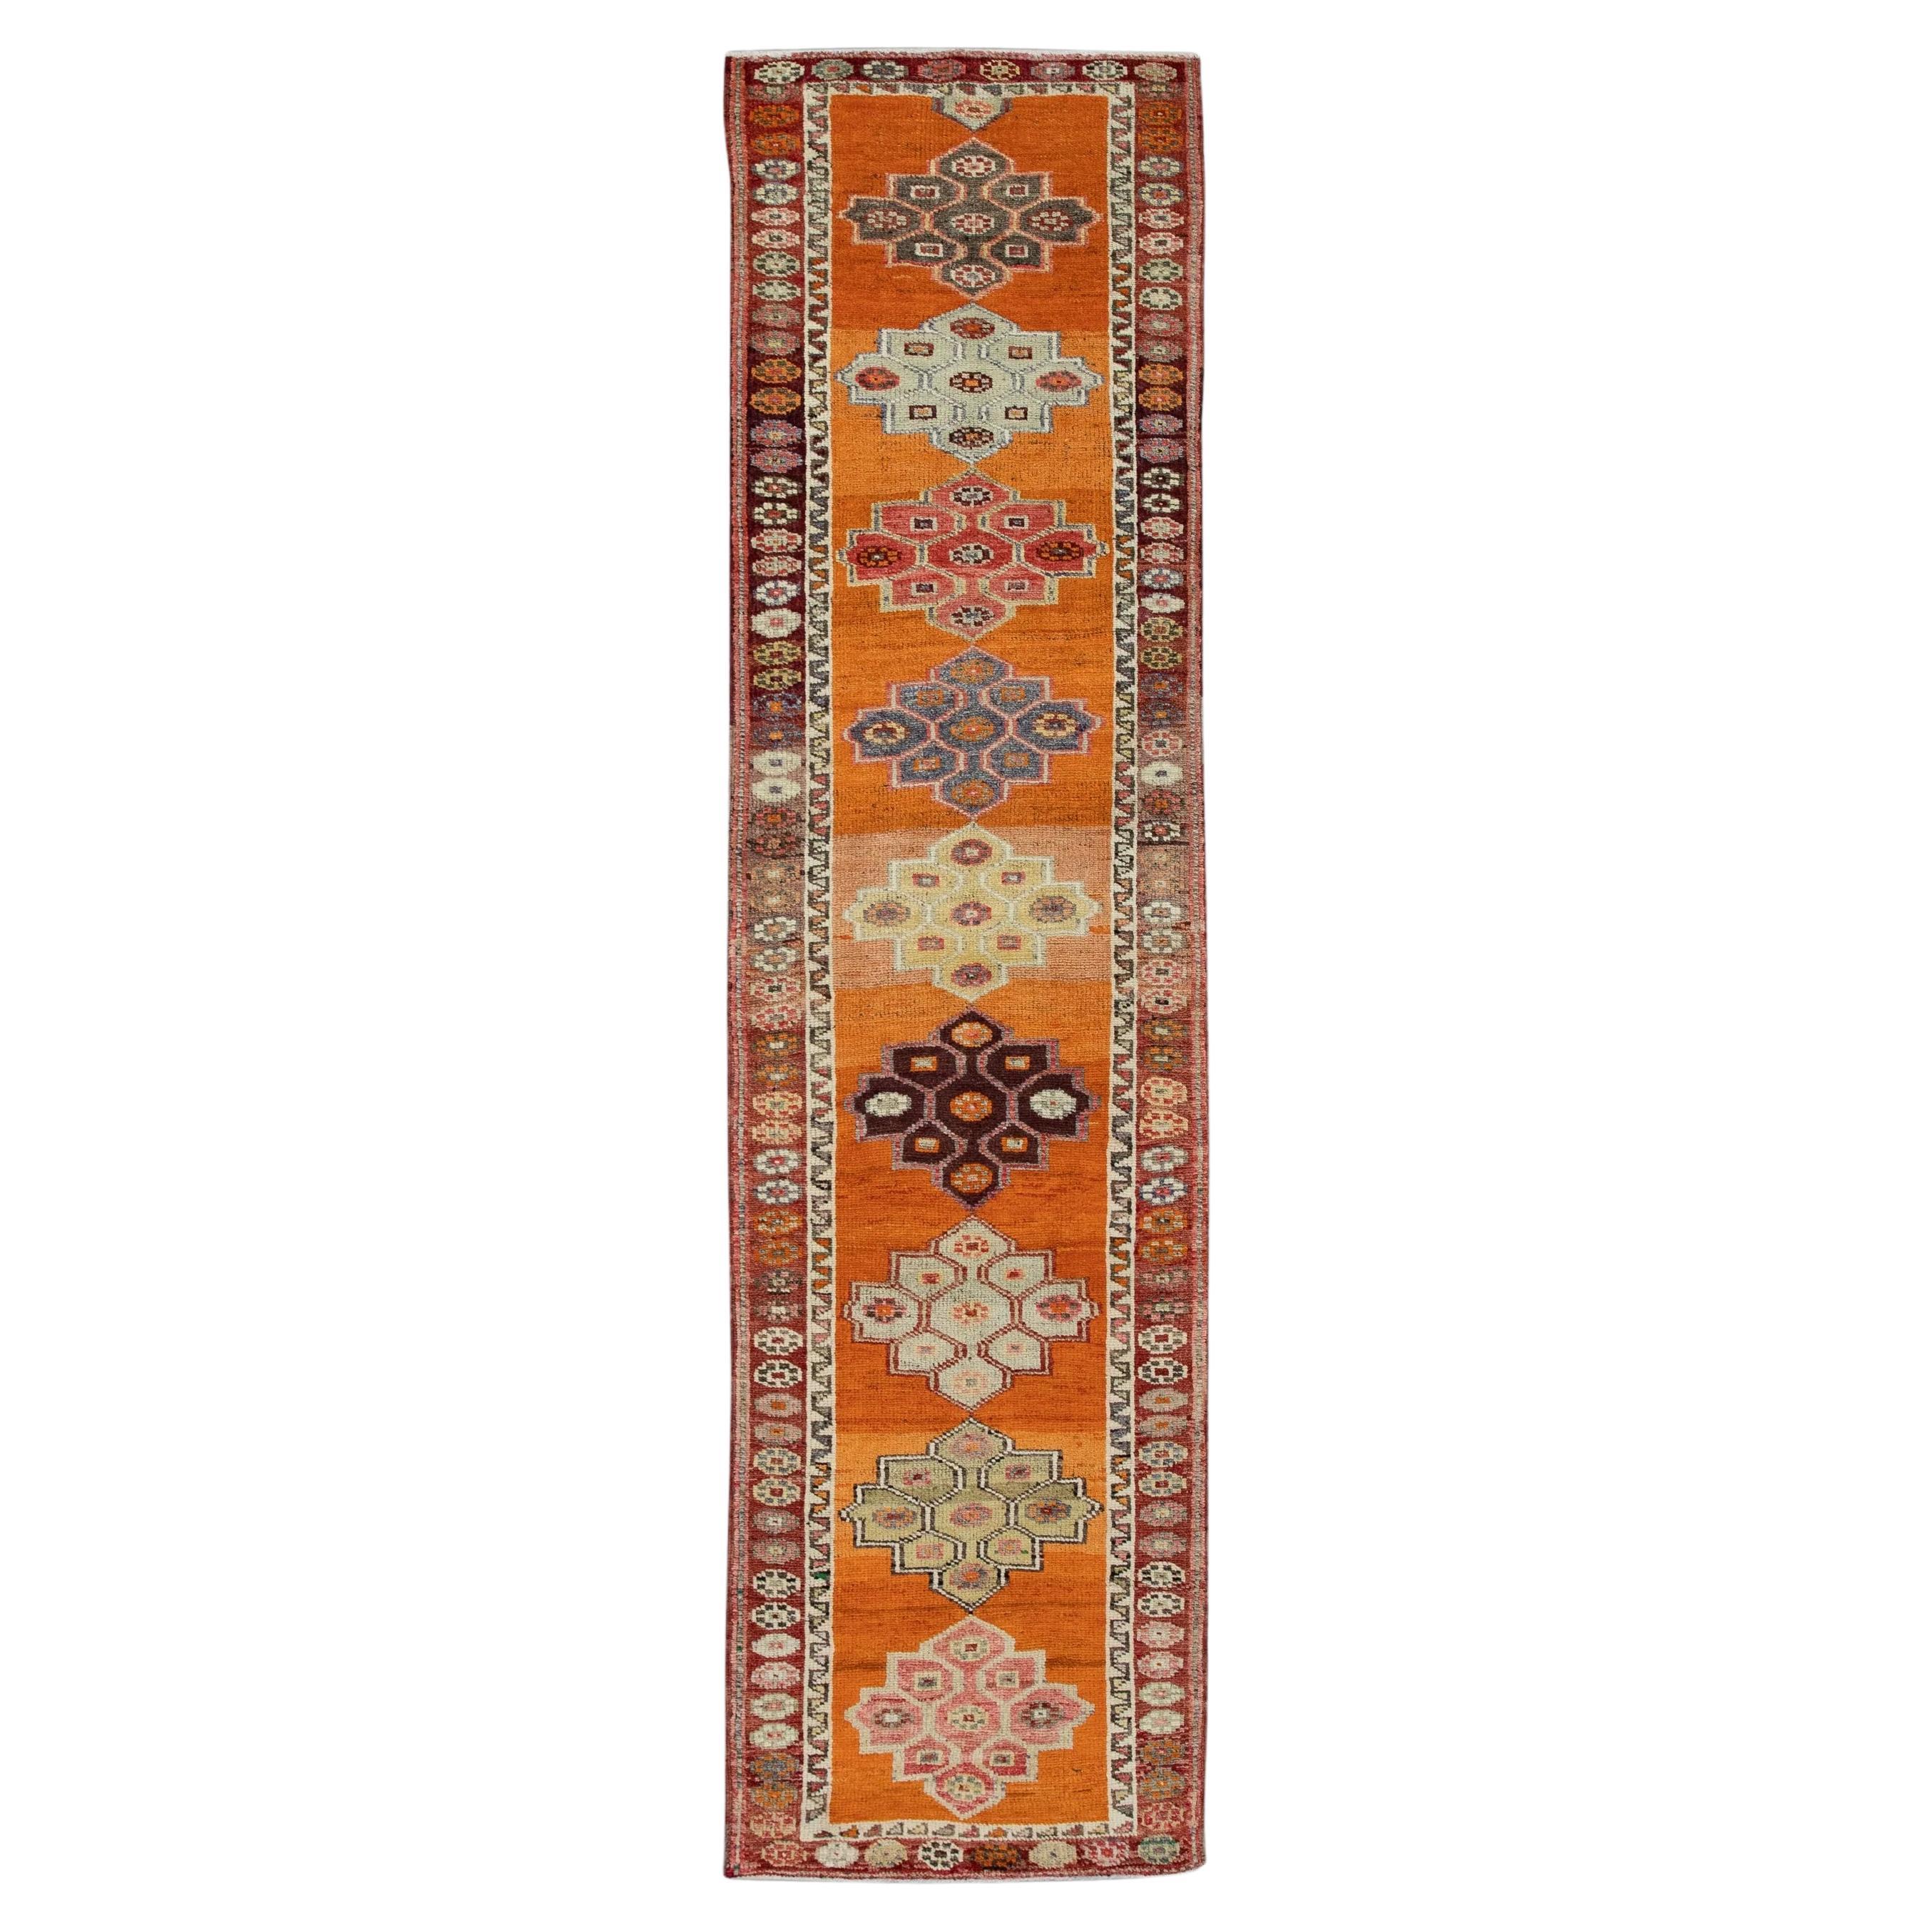 Tapis de couloir turc vintage orange multicolore 2'8" x 10'9"